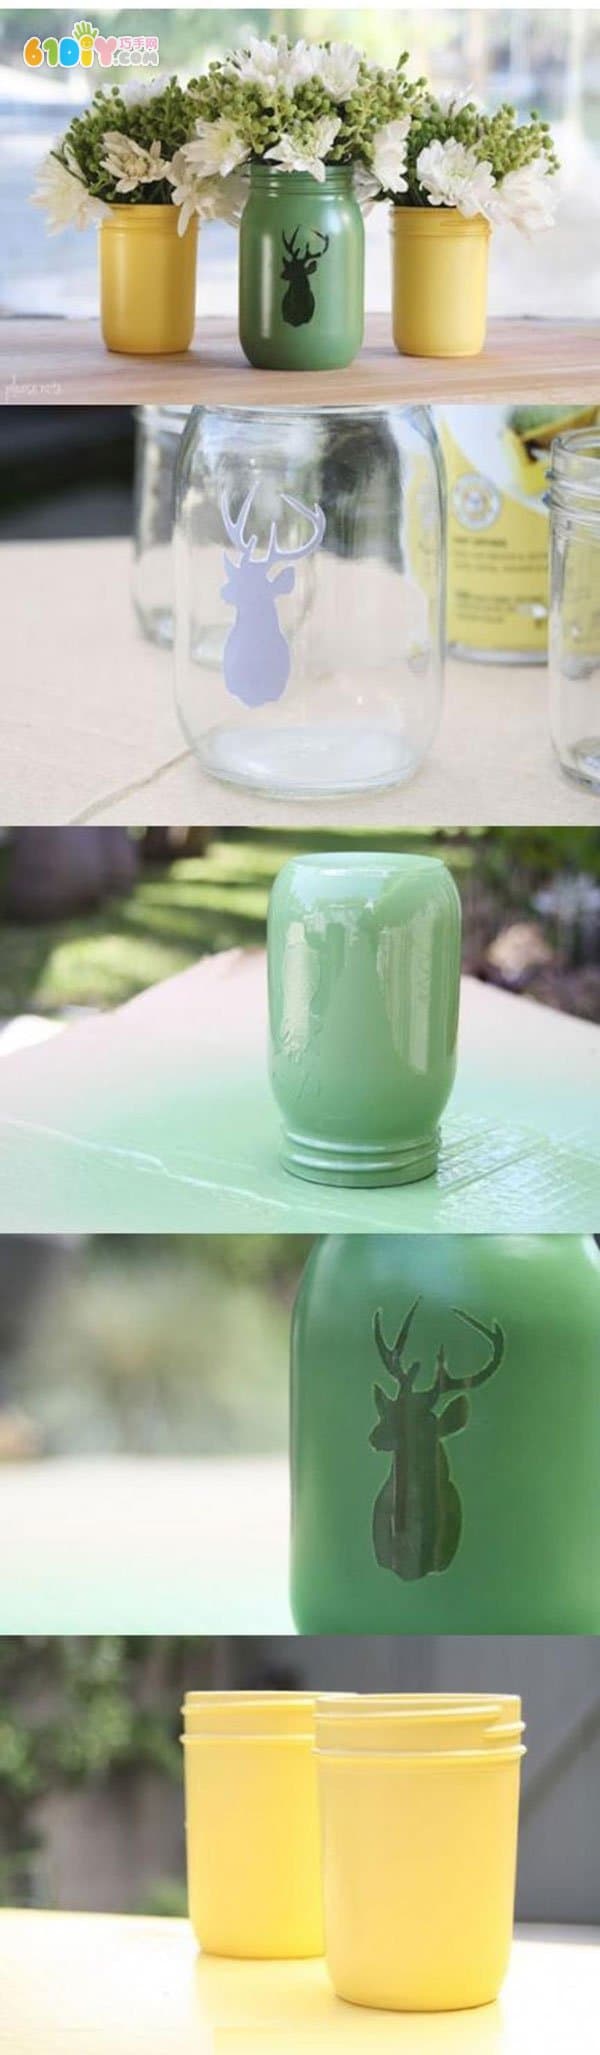 废玻璃瓶制作装饰花瓶